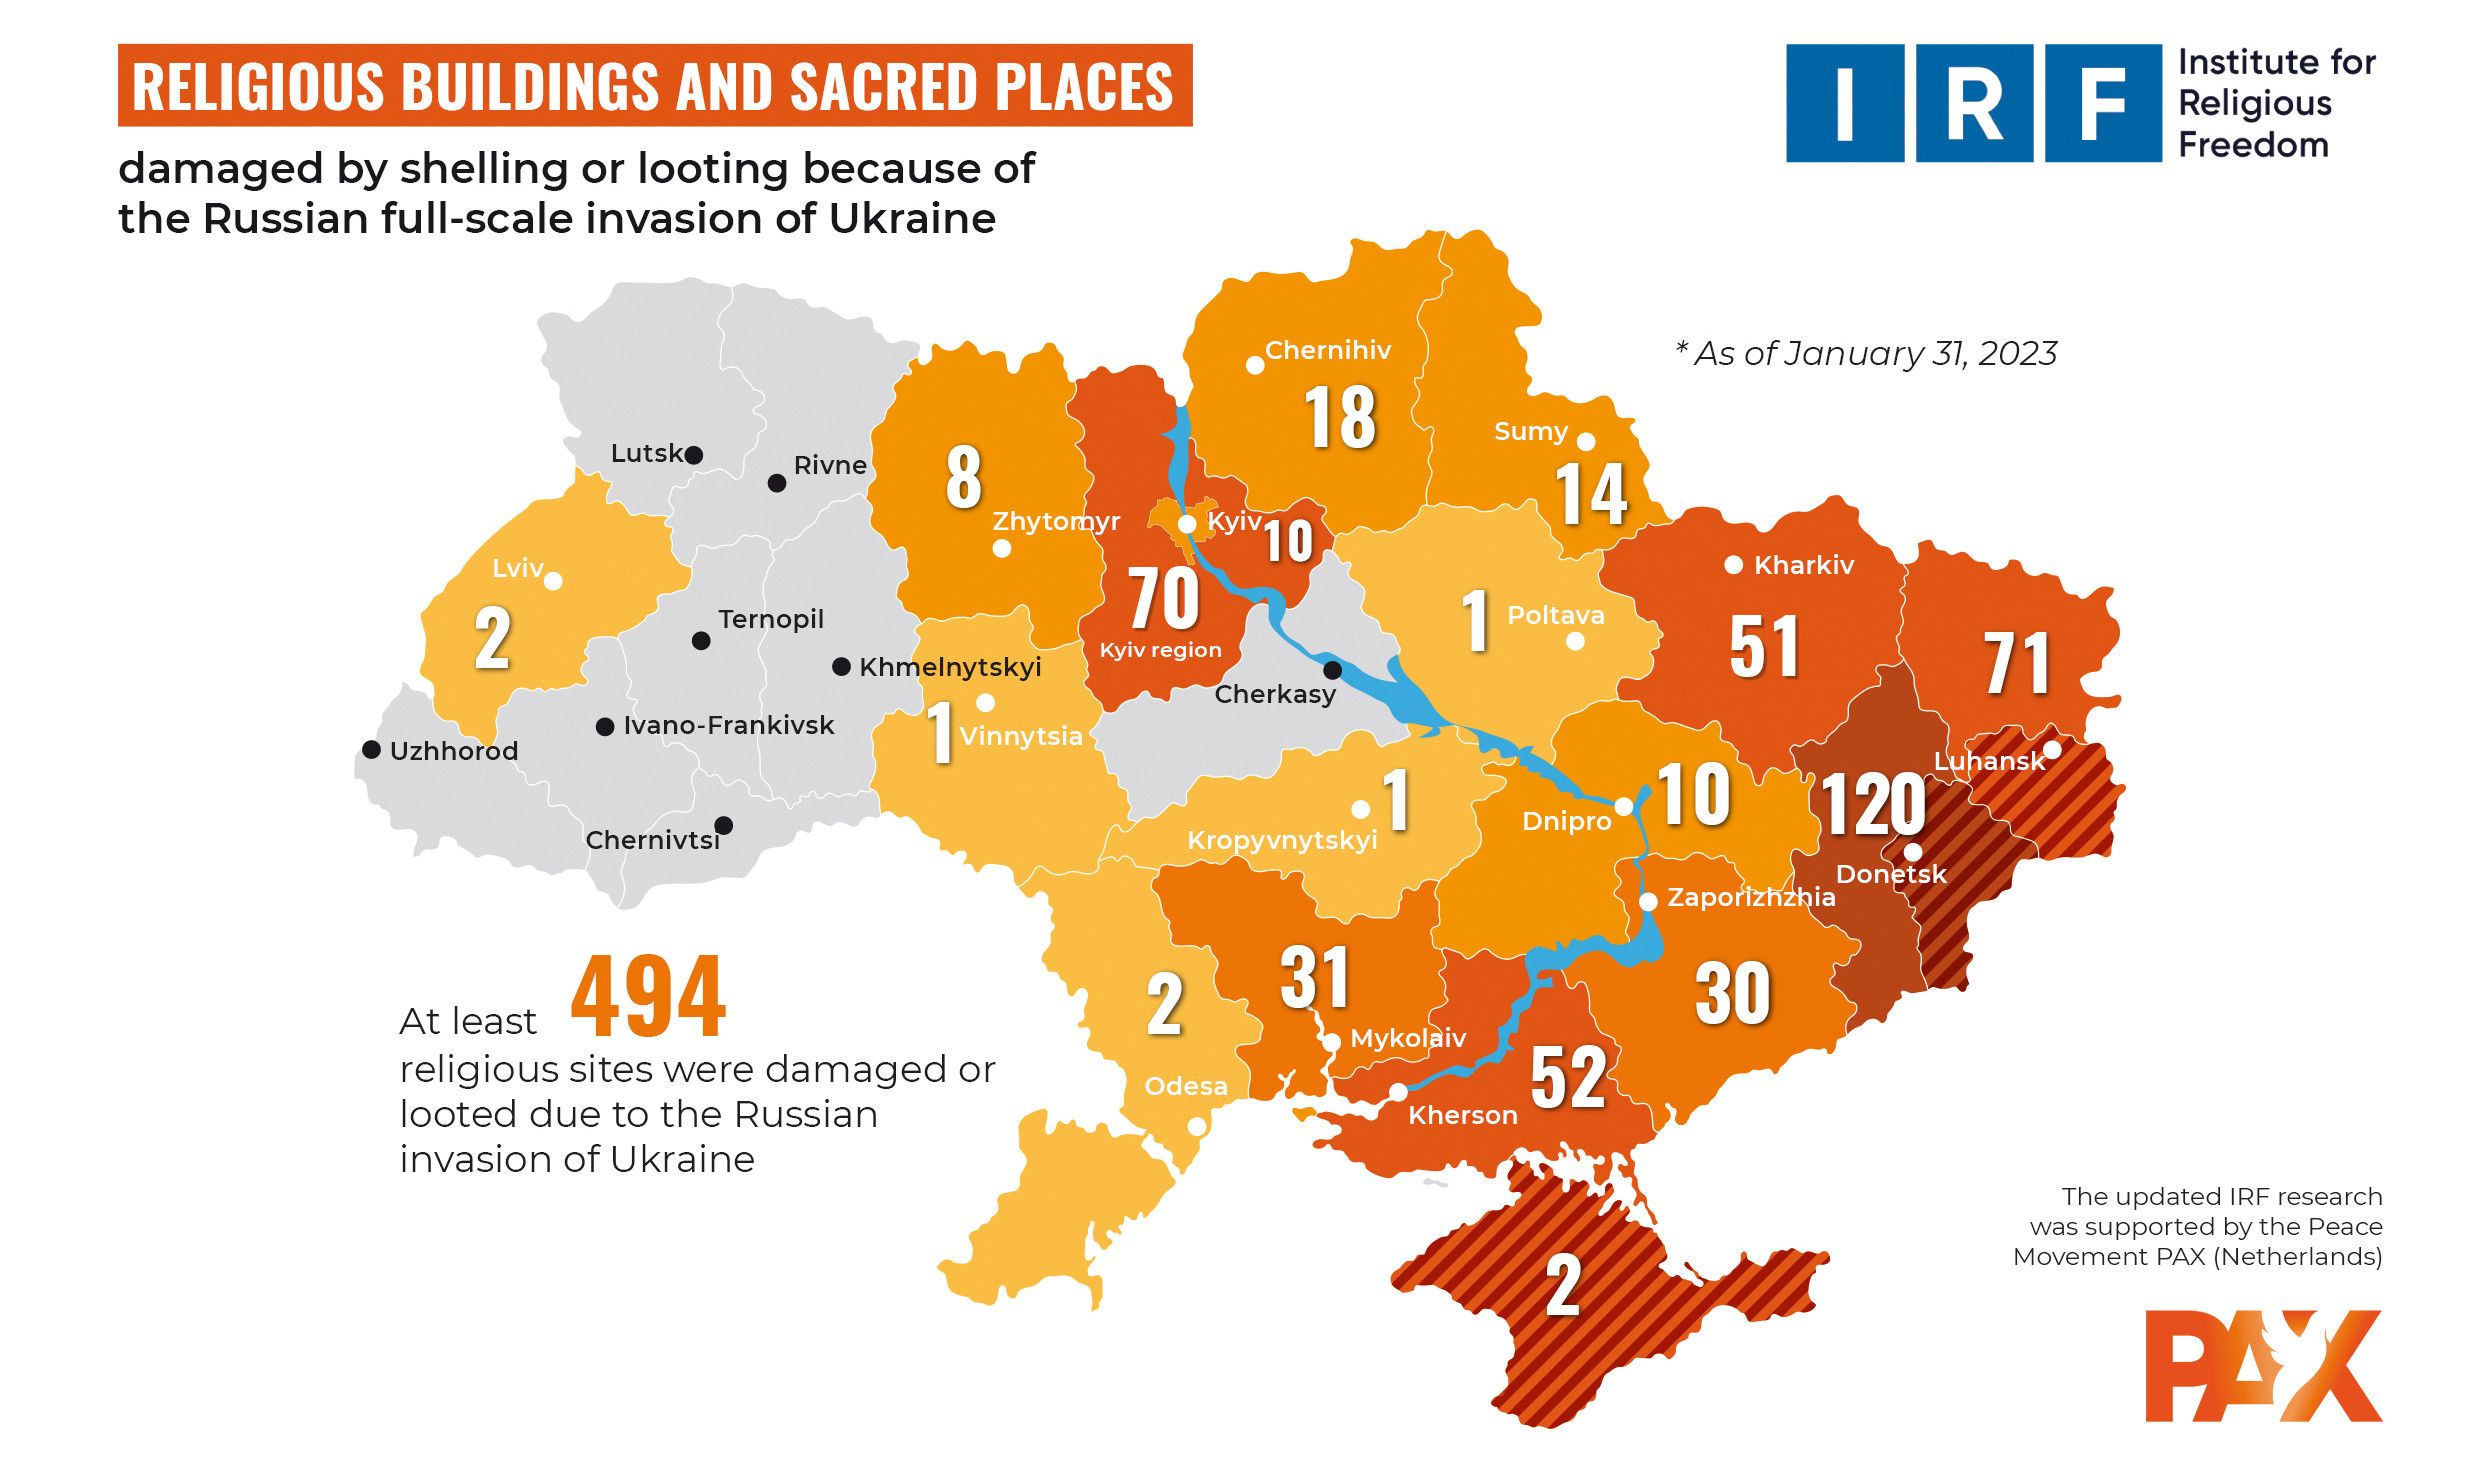 Почти 500 религиозных сооружений разрушено в Украине в результате российской агрессии, – ИРС - фото 108079